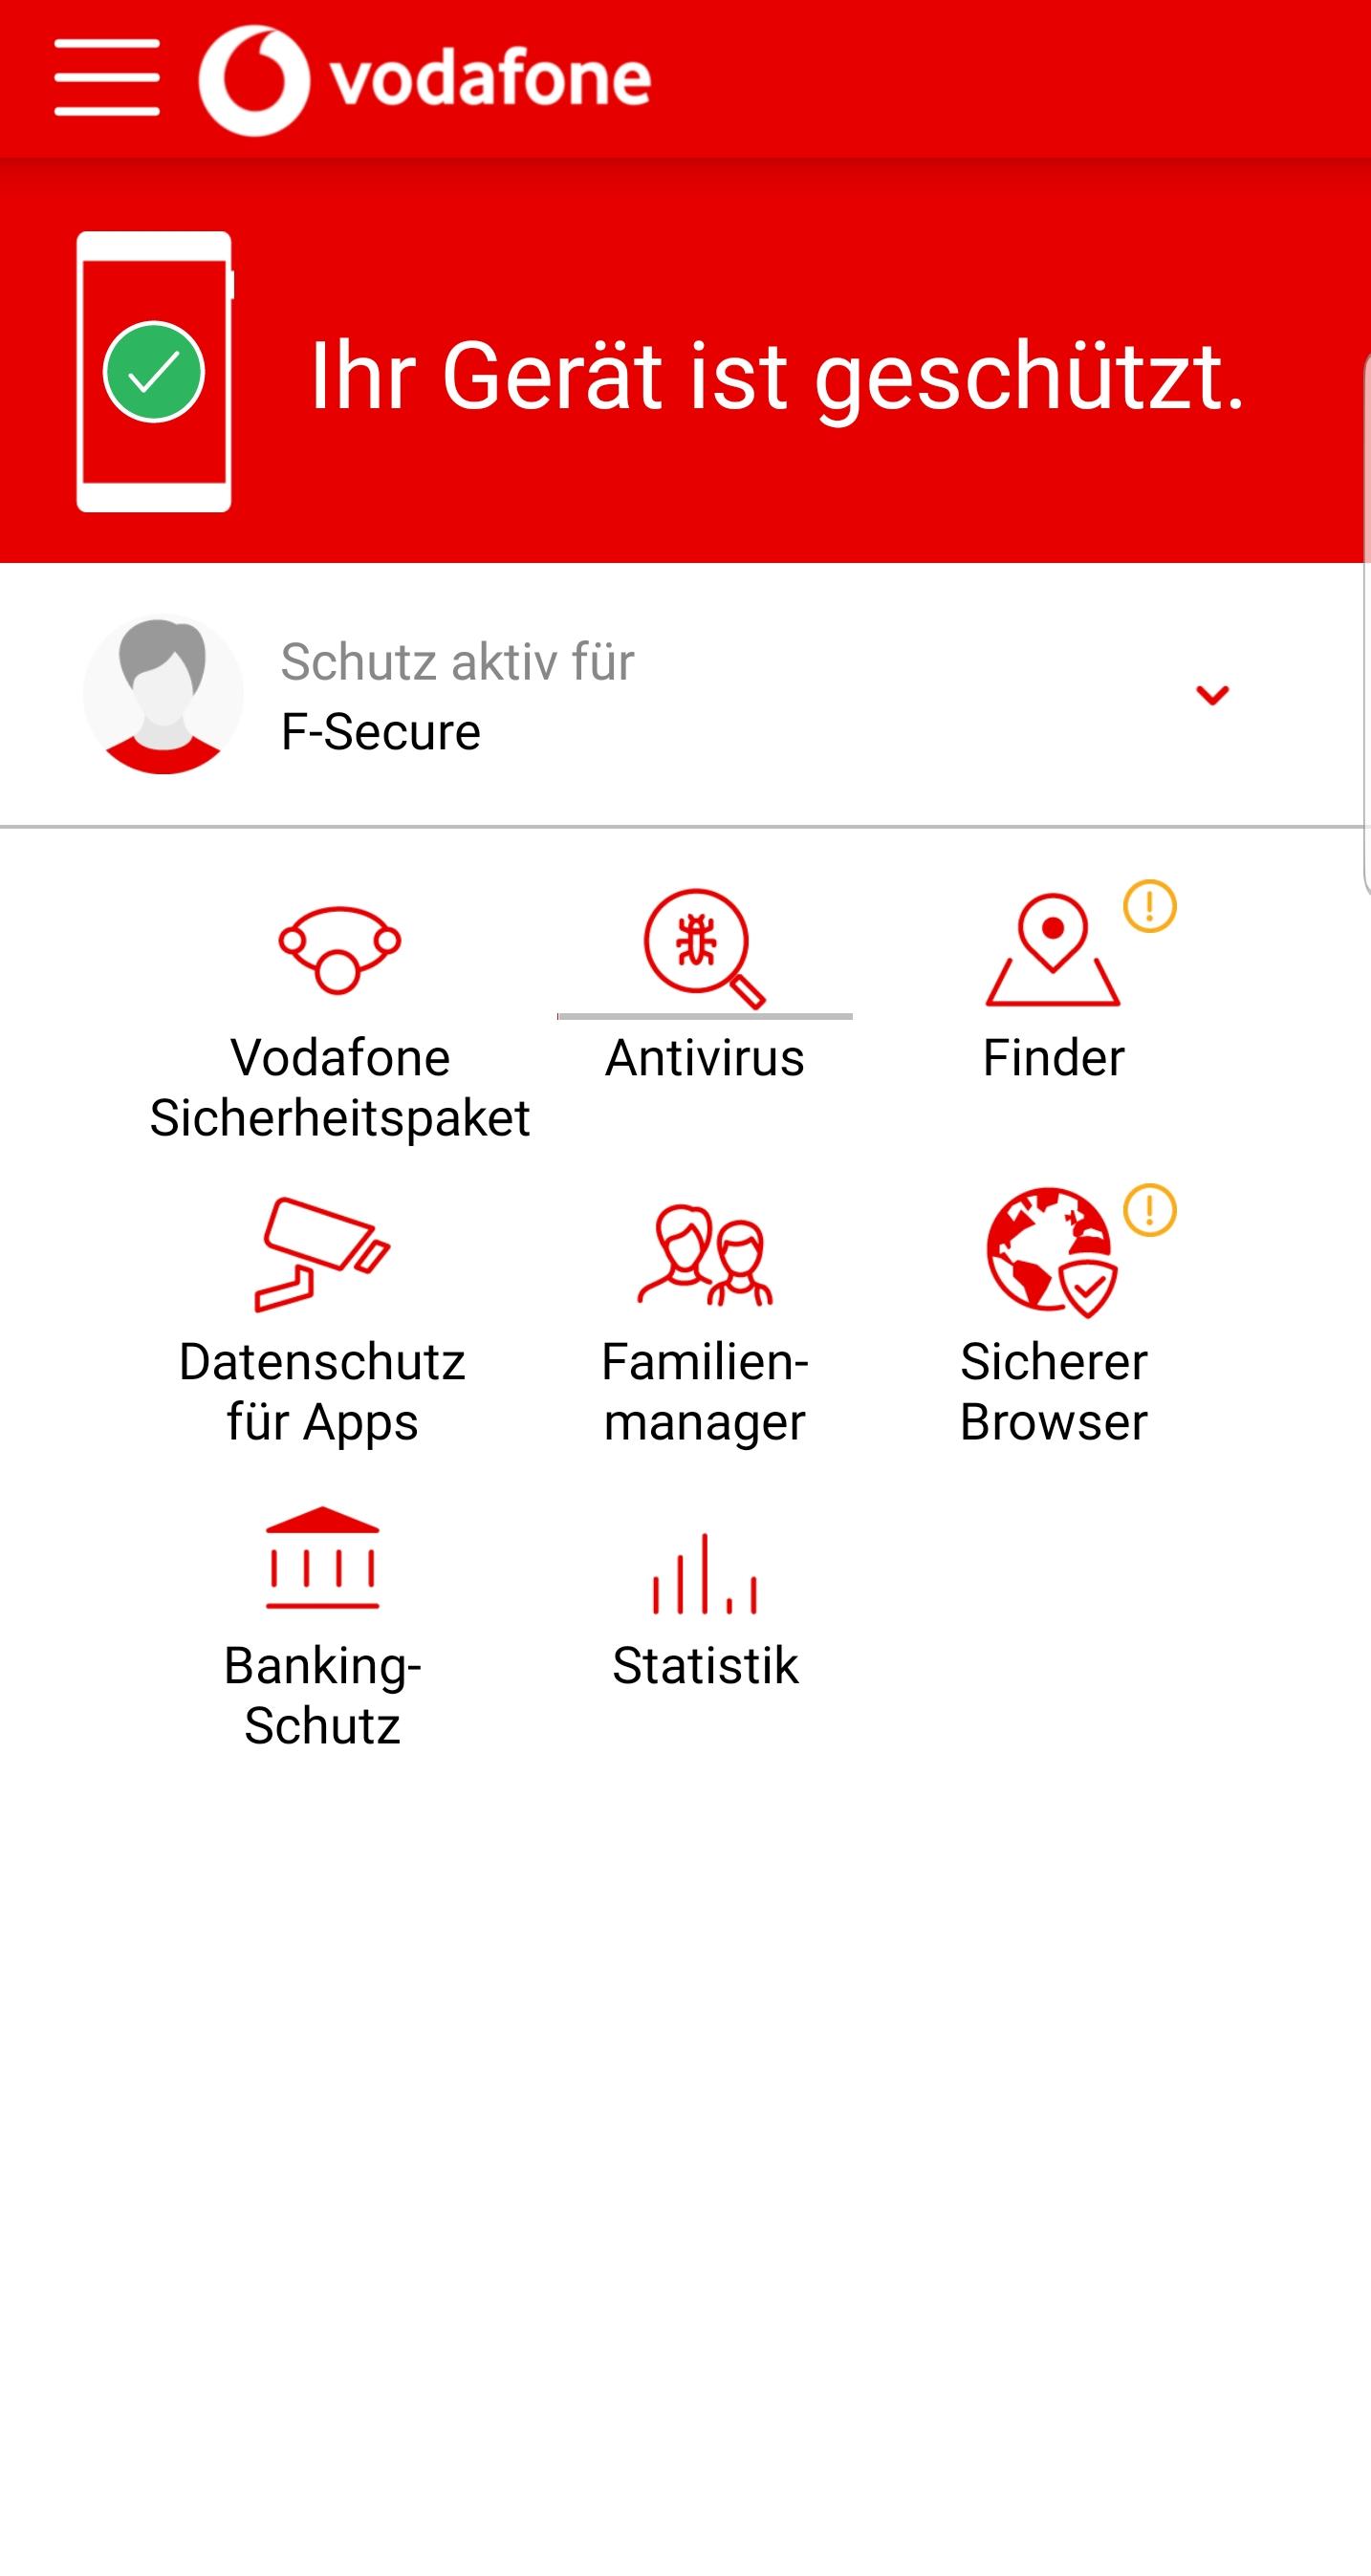 Vodafone Sicherheitspaket for Android - APK Download